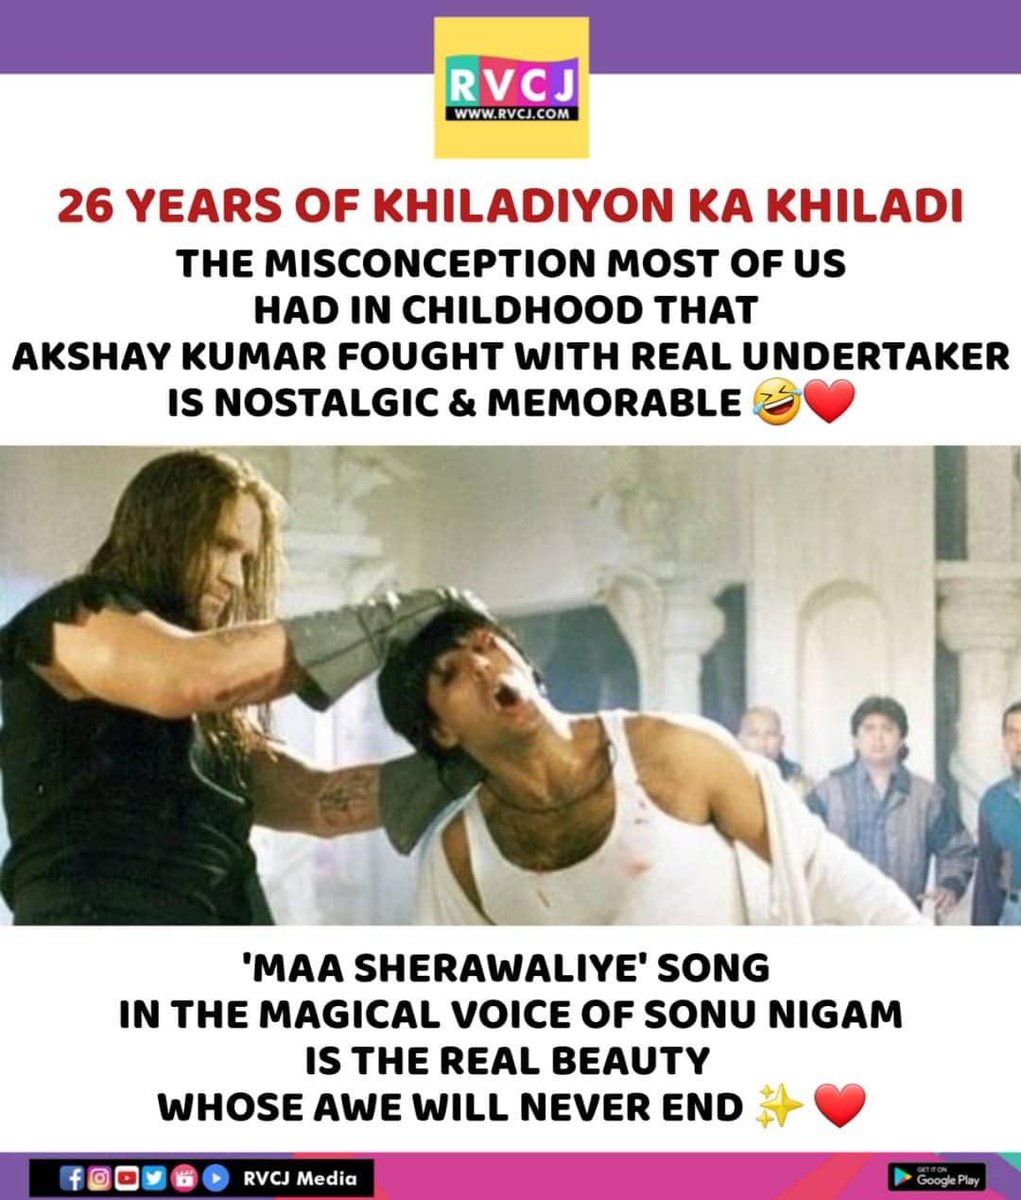 26 Years of Khiladiyon Ka Khiladi!
#khiladiyonkakhiladi #akshaykumar #bollywood #rvcjmovies